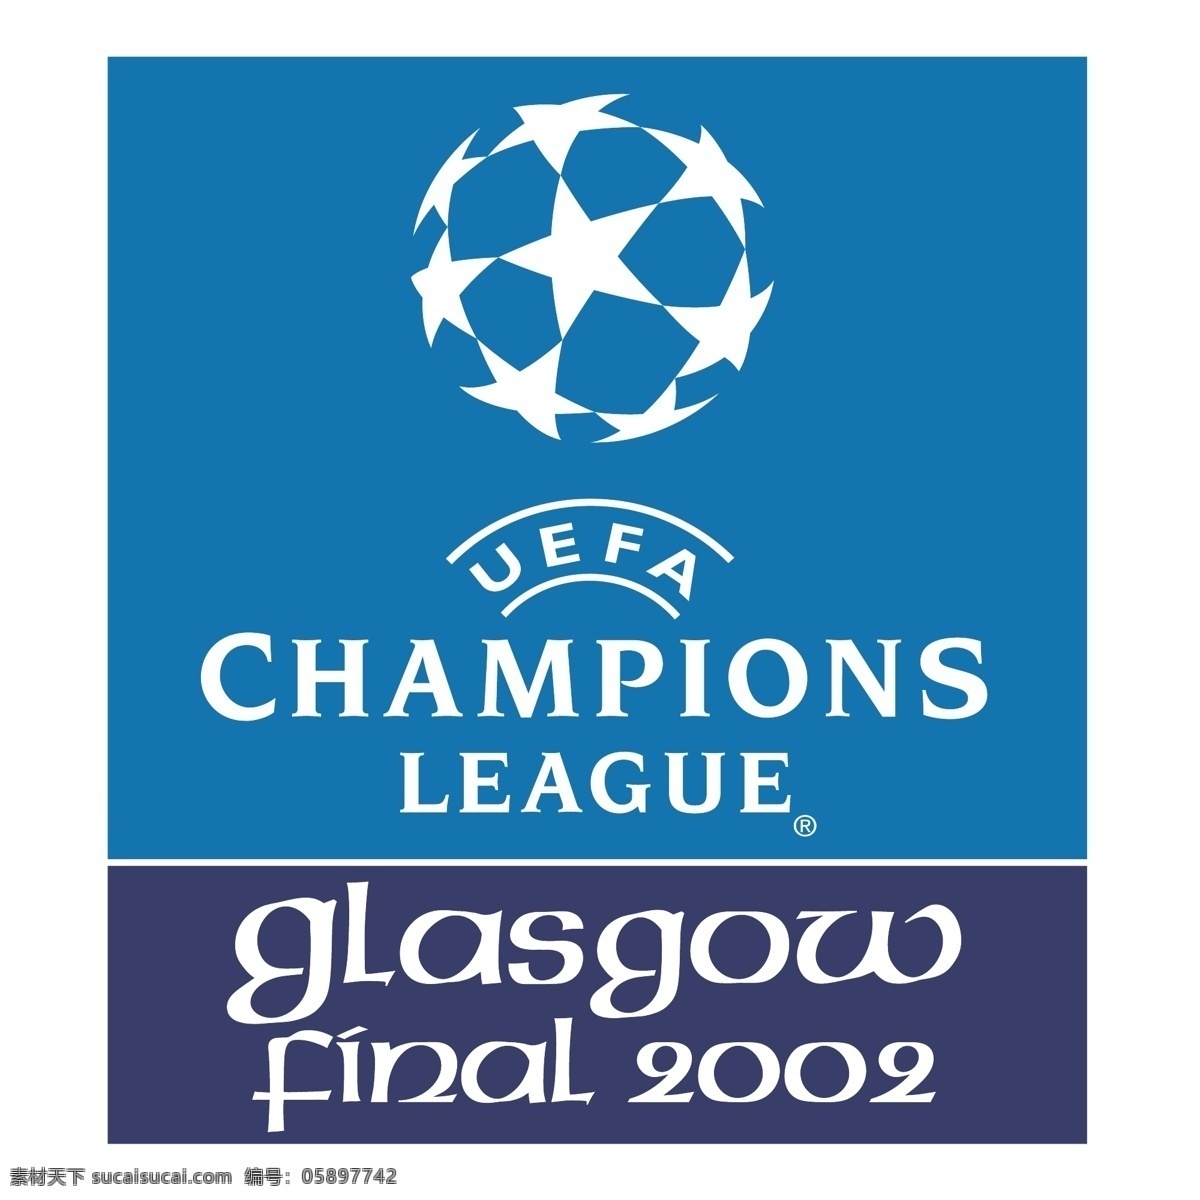 欧洲 冠军联赛 决赛 2002 格拉斯哥 冠军 联盟 最后的 矢量图 其他矢量图